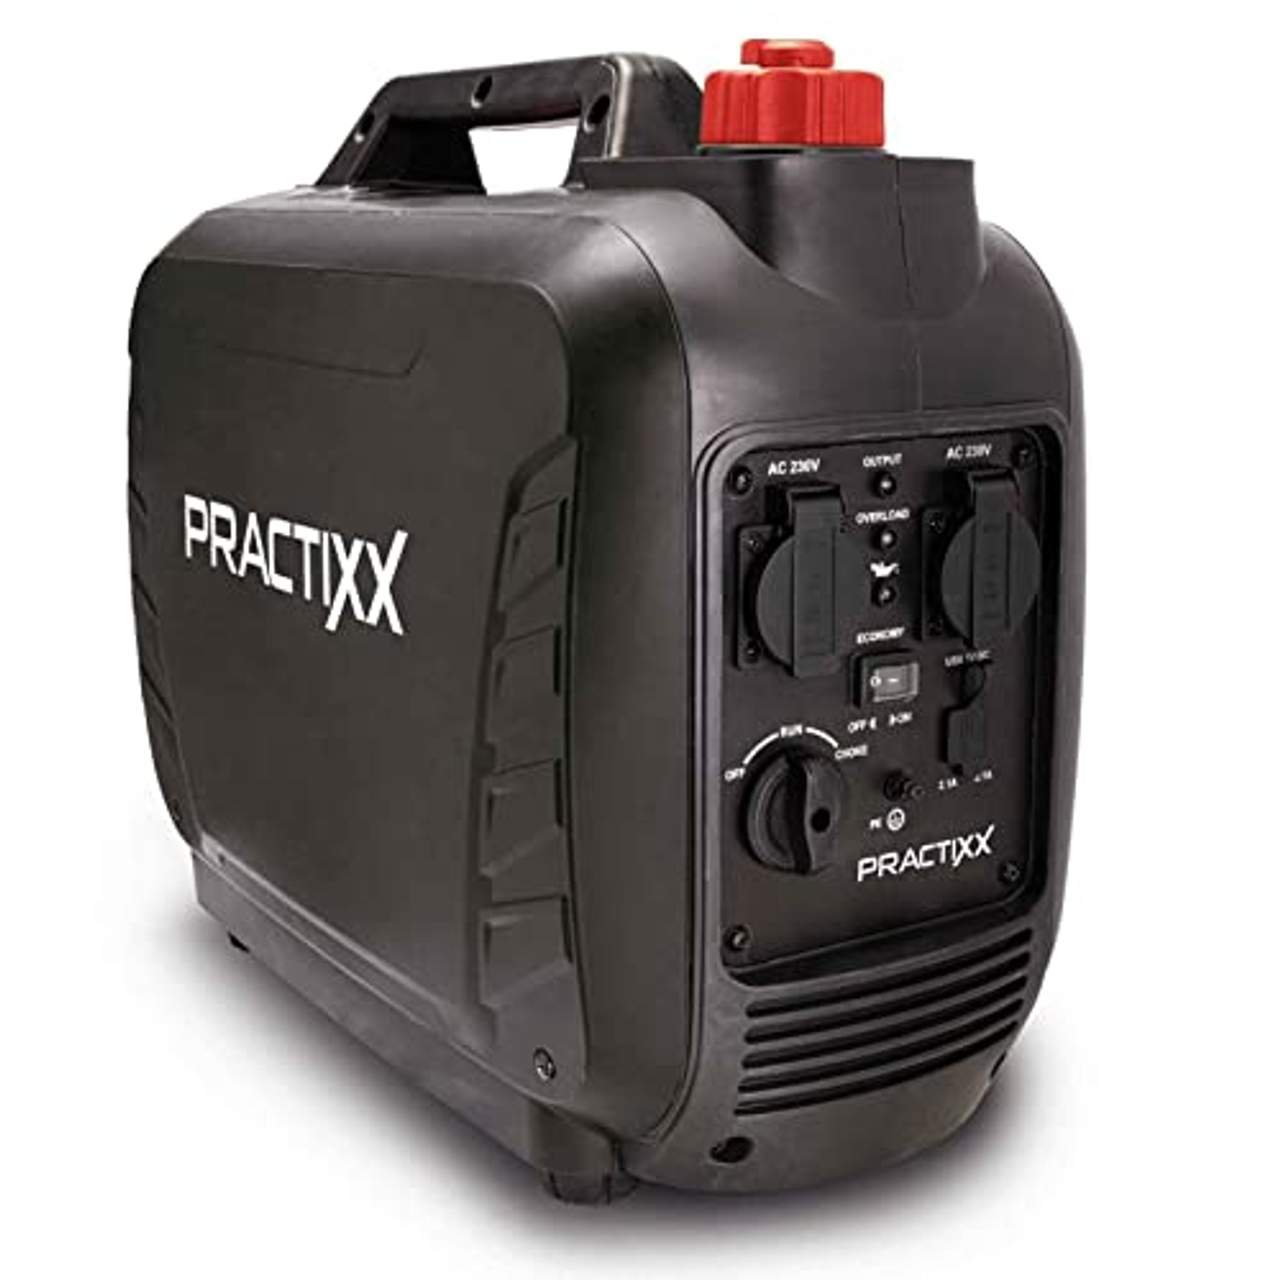 Practixx by Scheppach Benzin Stromerzeuger Inverter